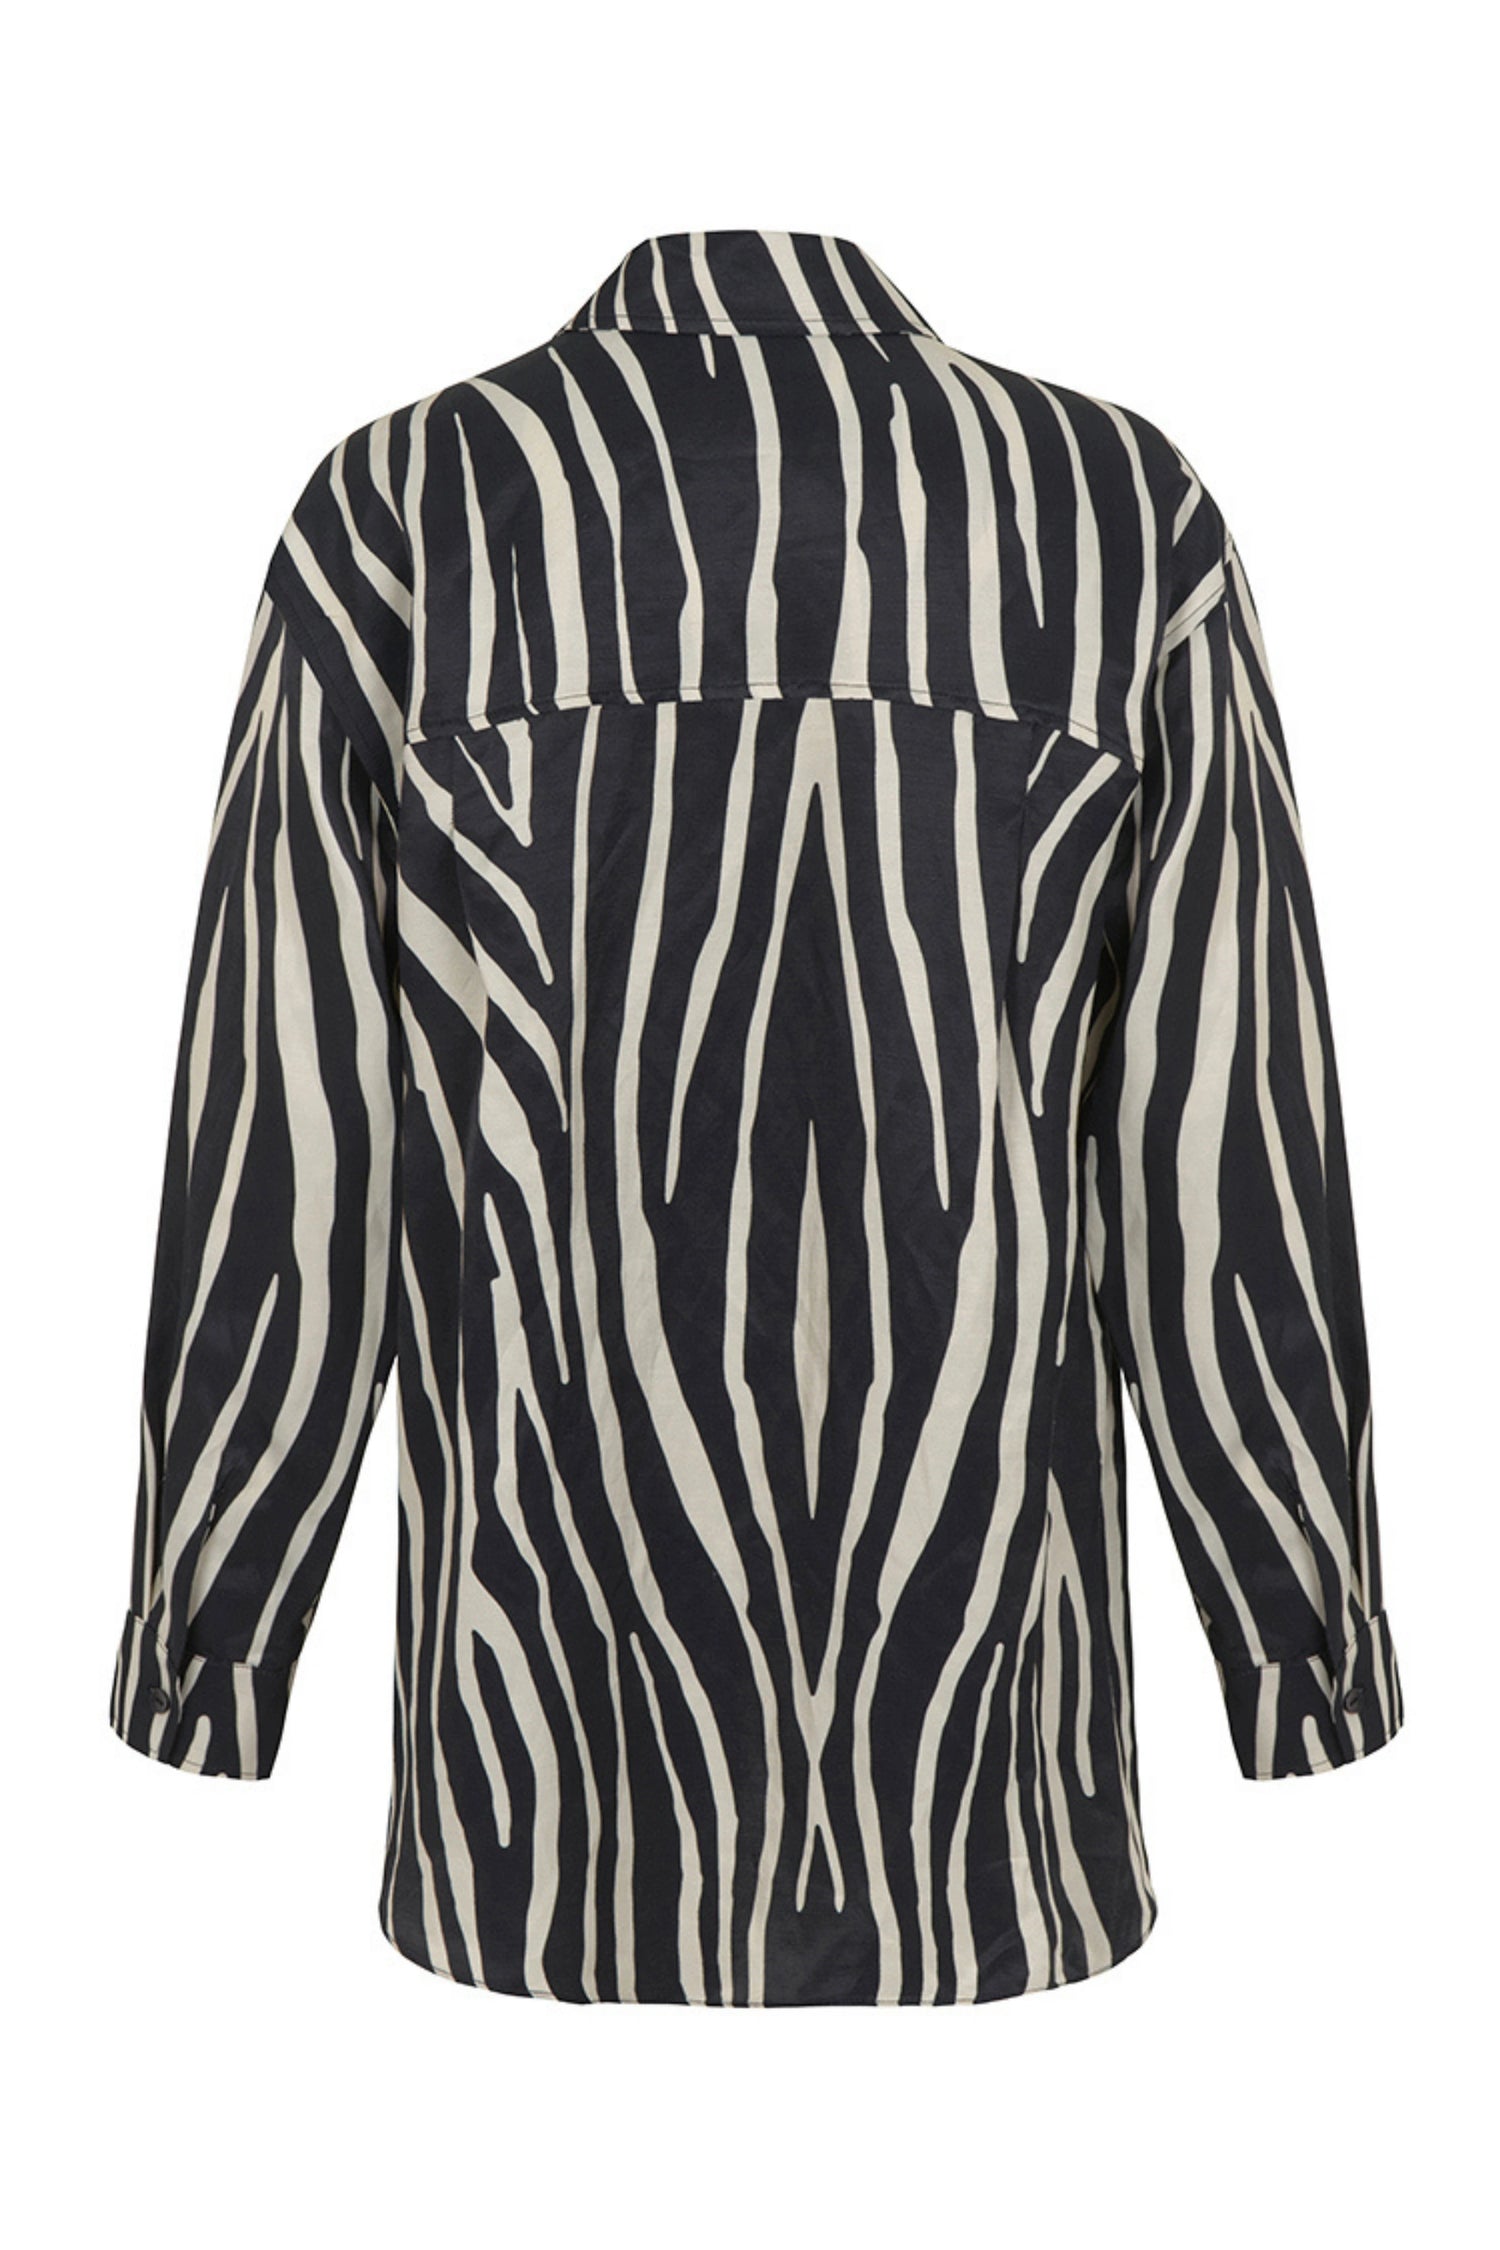 Zebra Print Oversized Linen Shirt